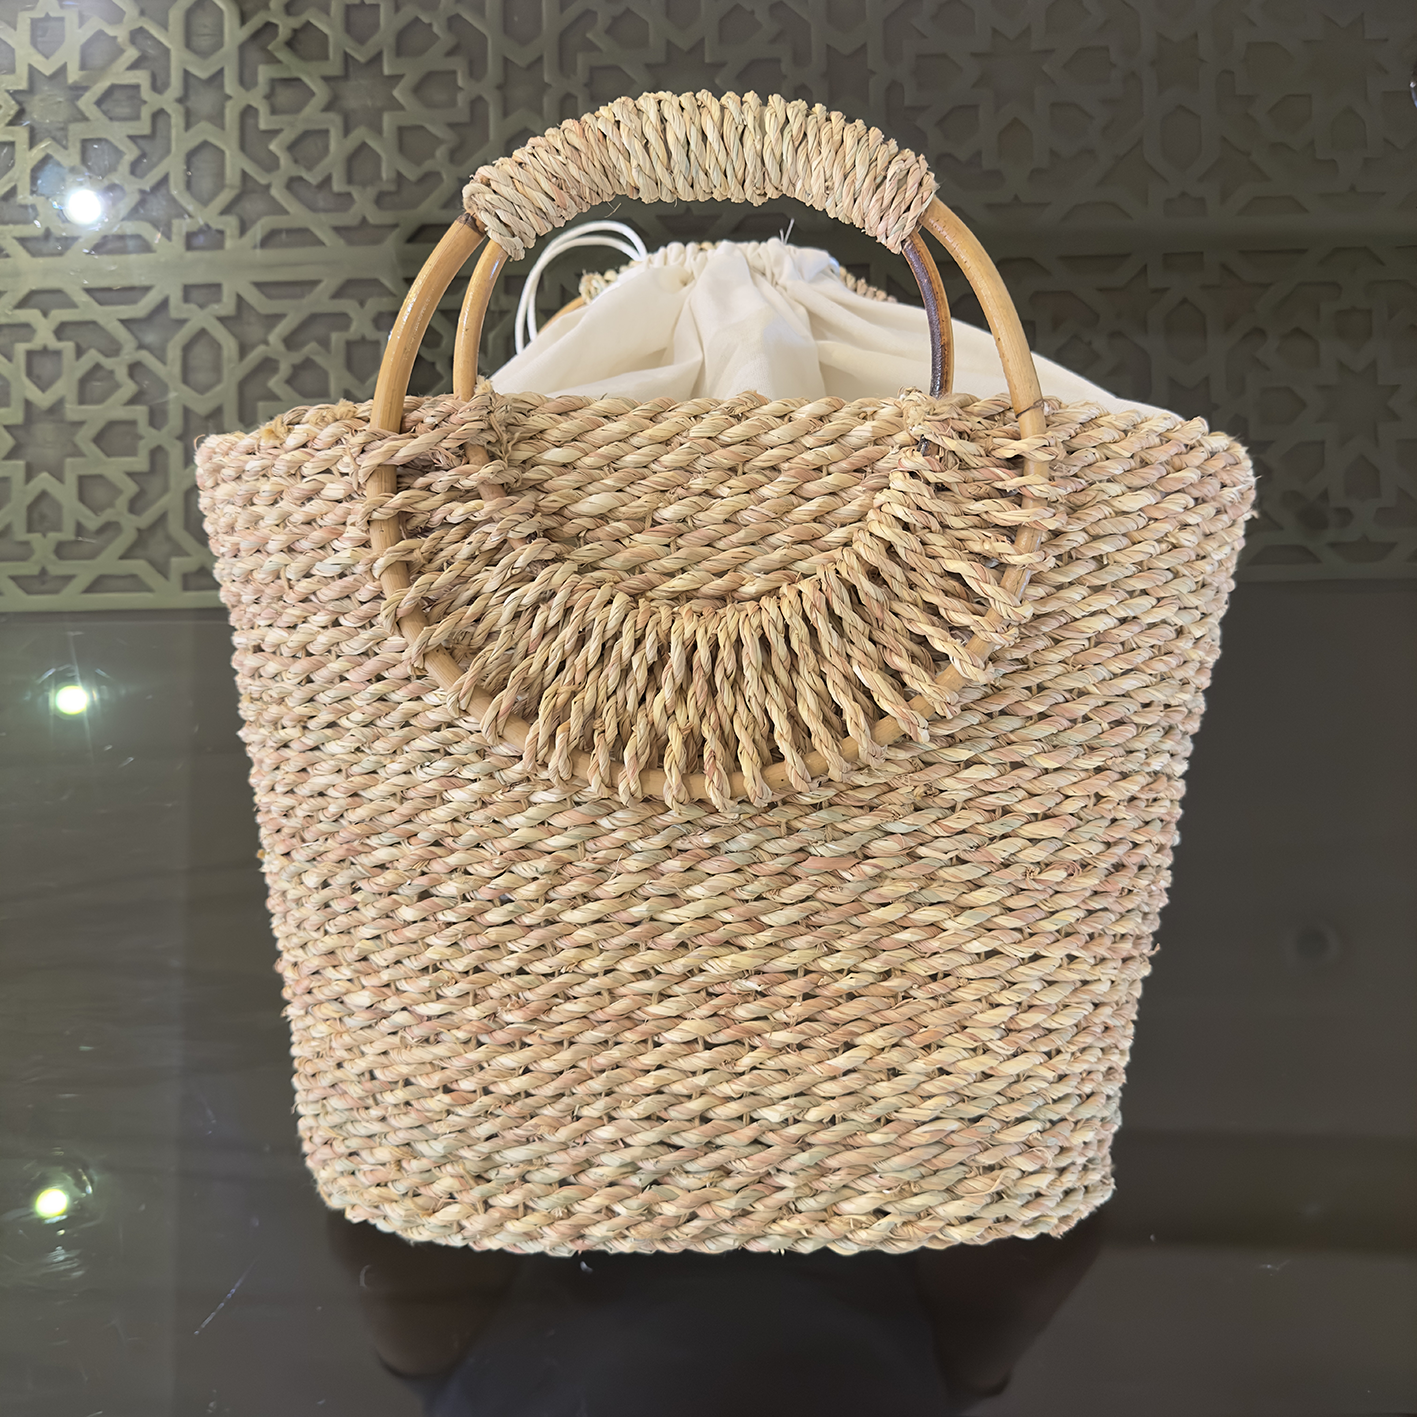 Halfa bag with wooden circular handle. حقيبة حلفا بيد خشب دائرية